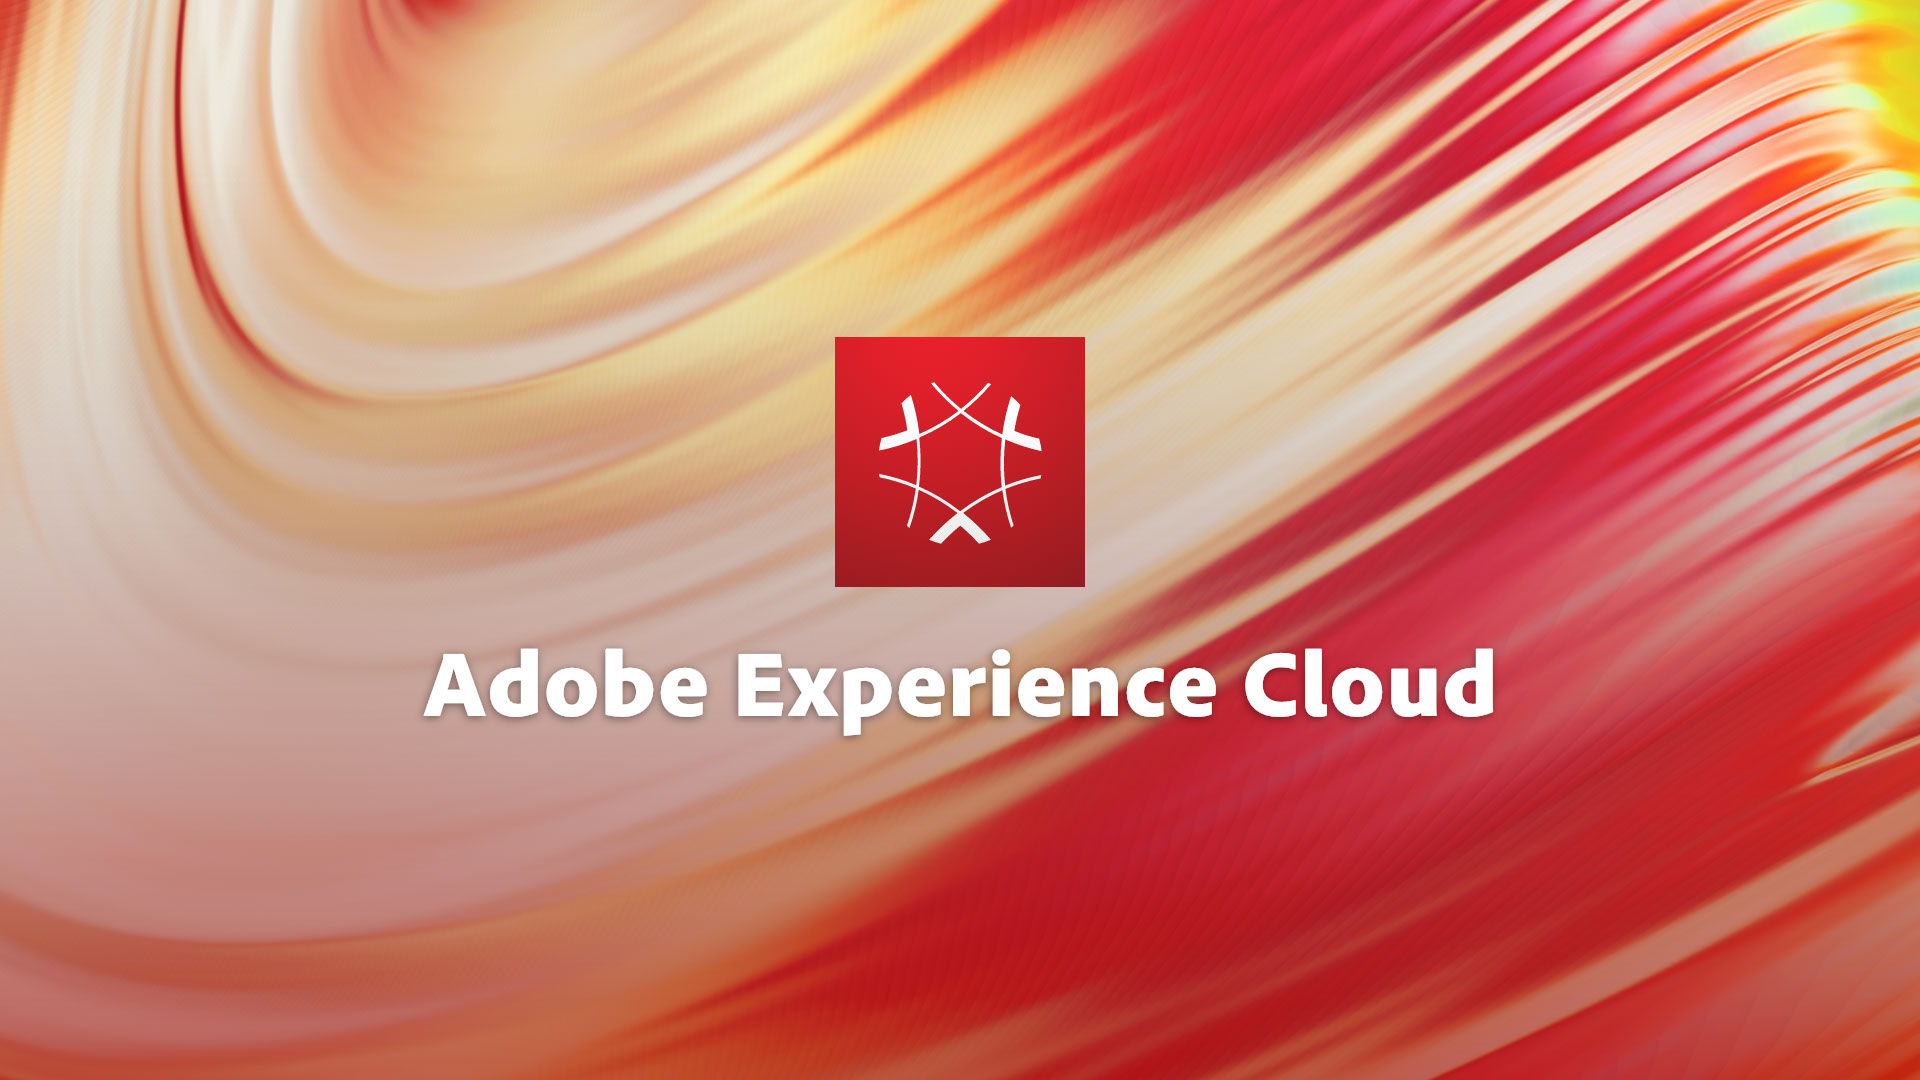 Adobe apresenta tendências para o marketing nos próximos anos